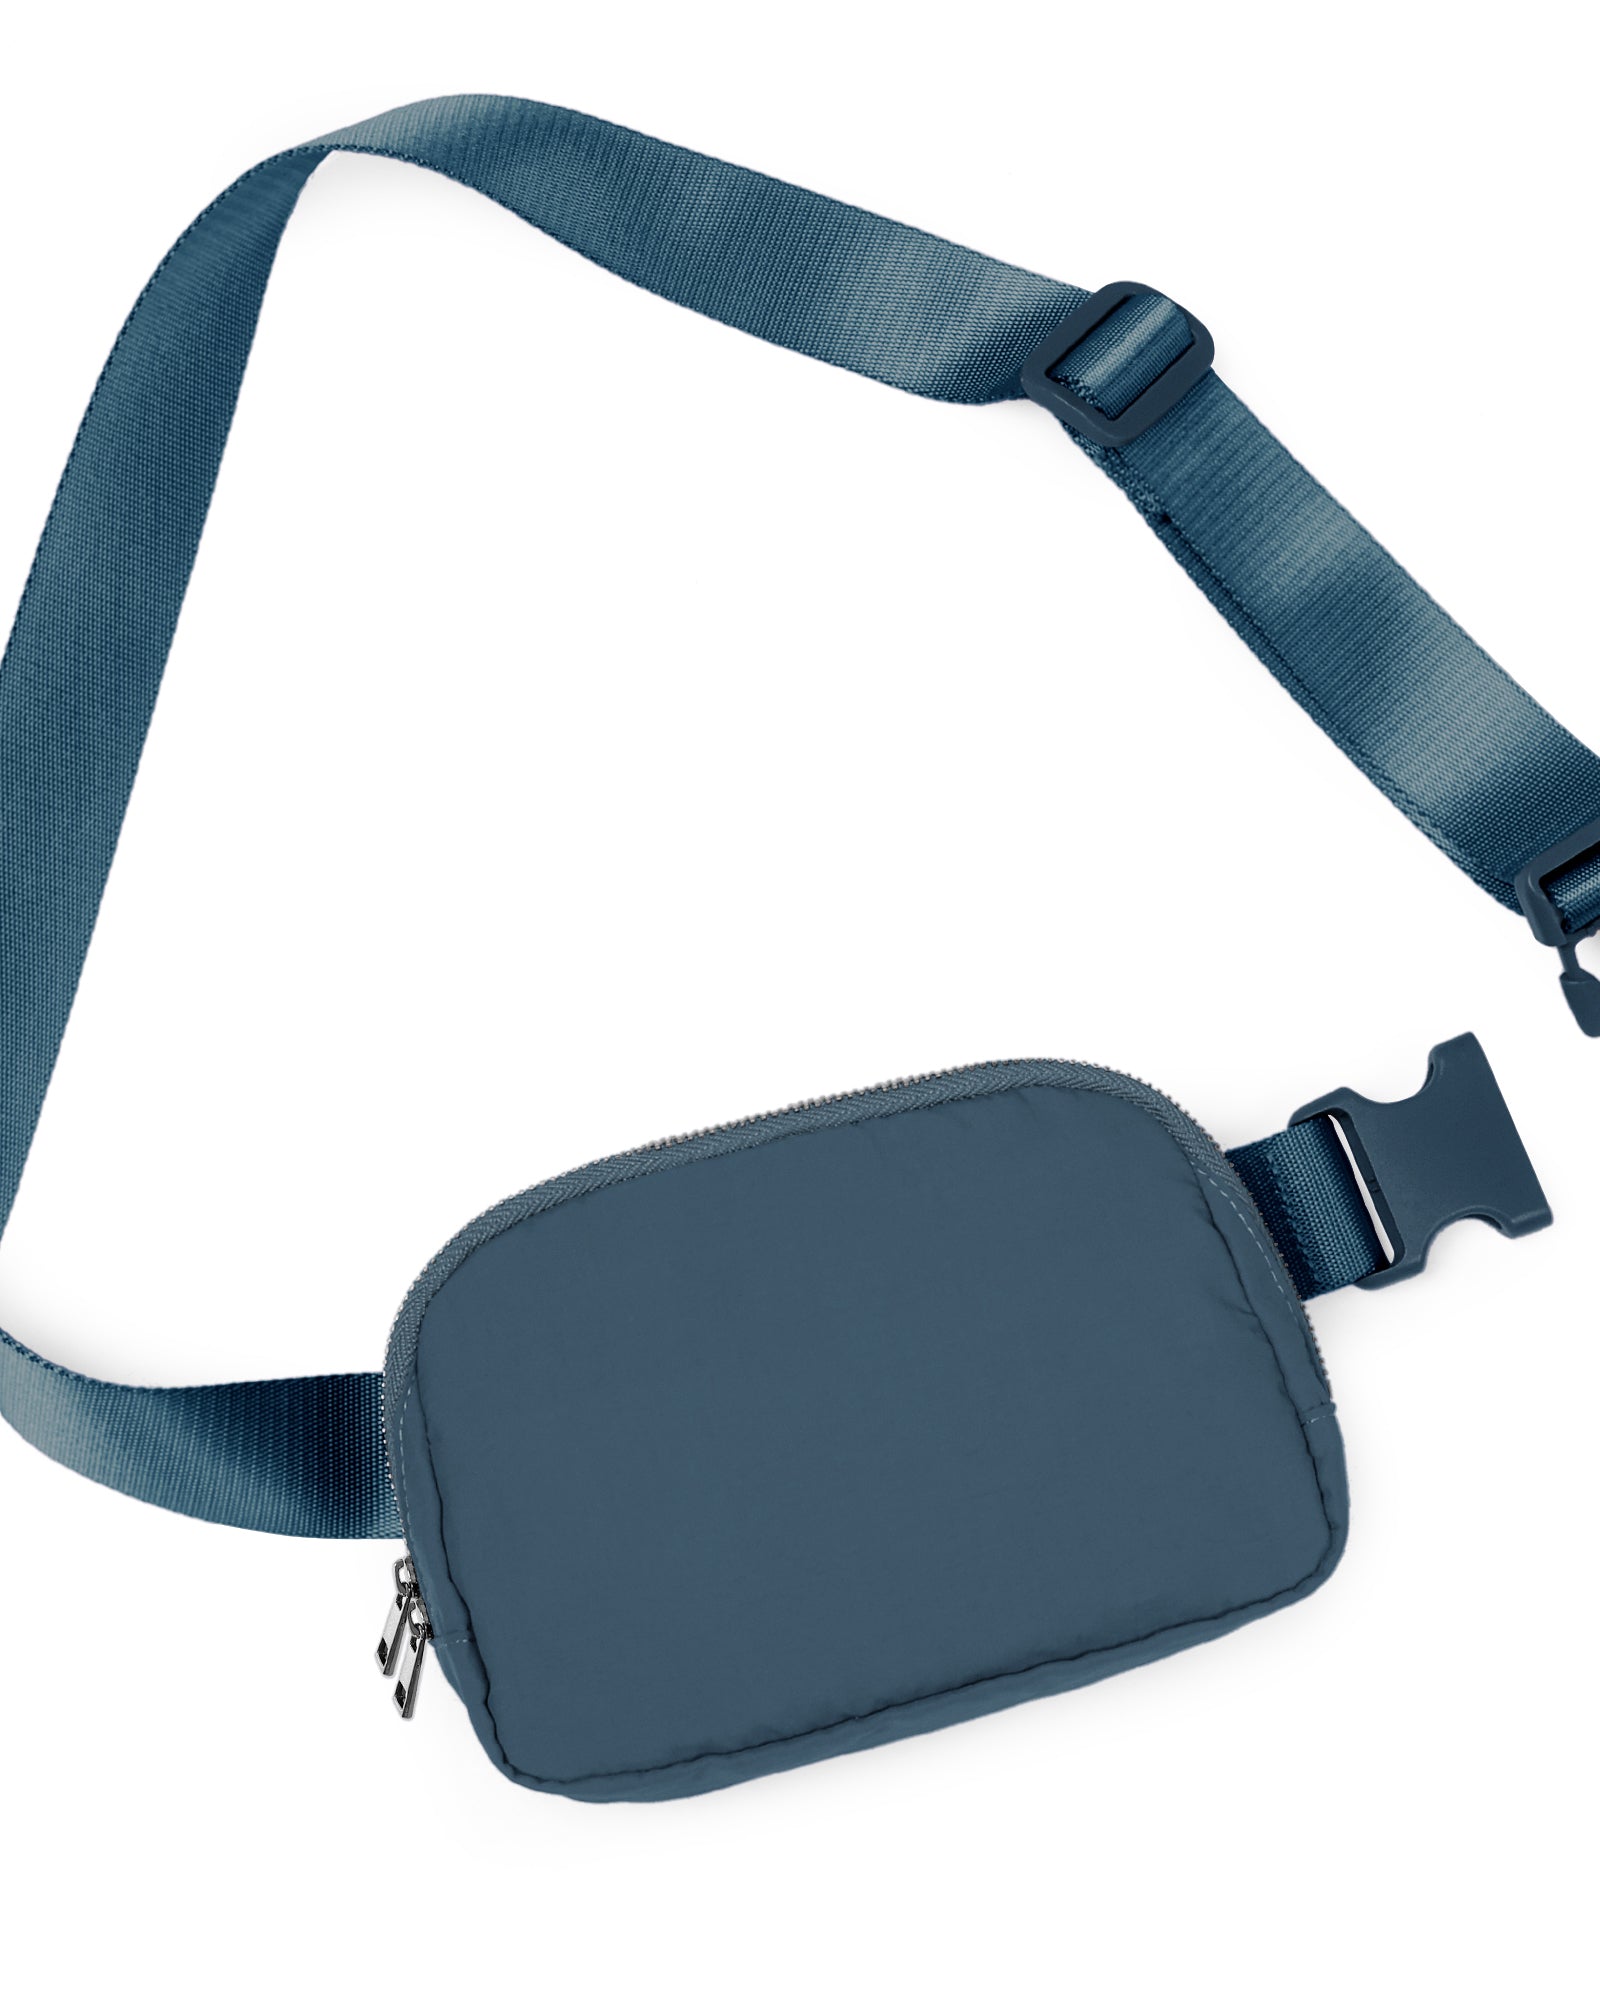 Unisex Two-Way Zip Mini Belt Bag Blue 8" x 2" x 5.5" - ododos